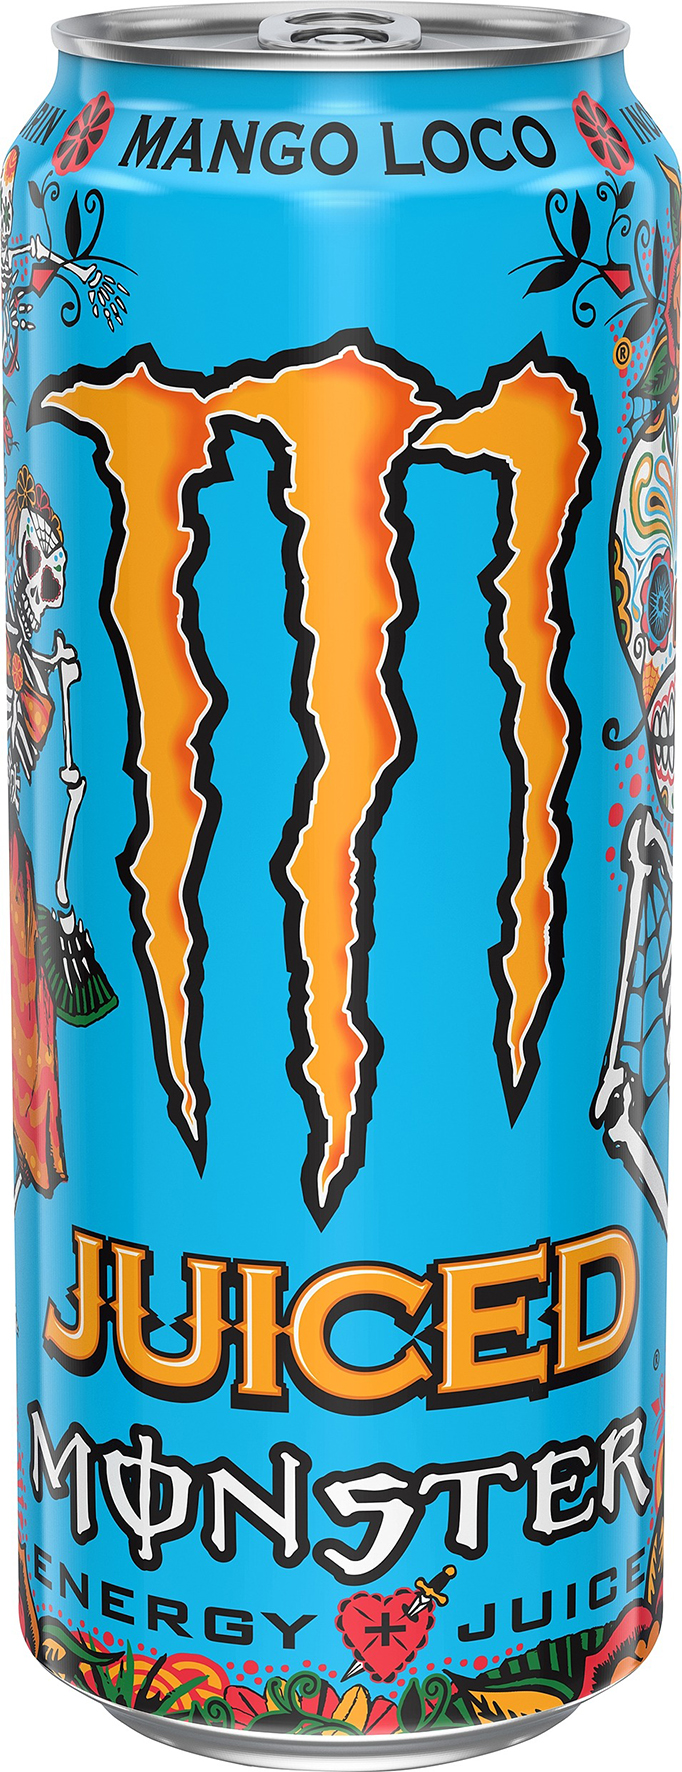 [8557913] Monster Juiced Mang 50cl ink p